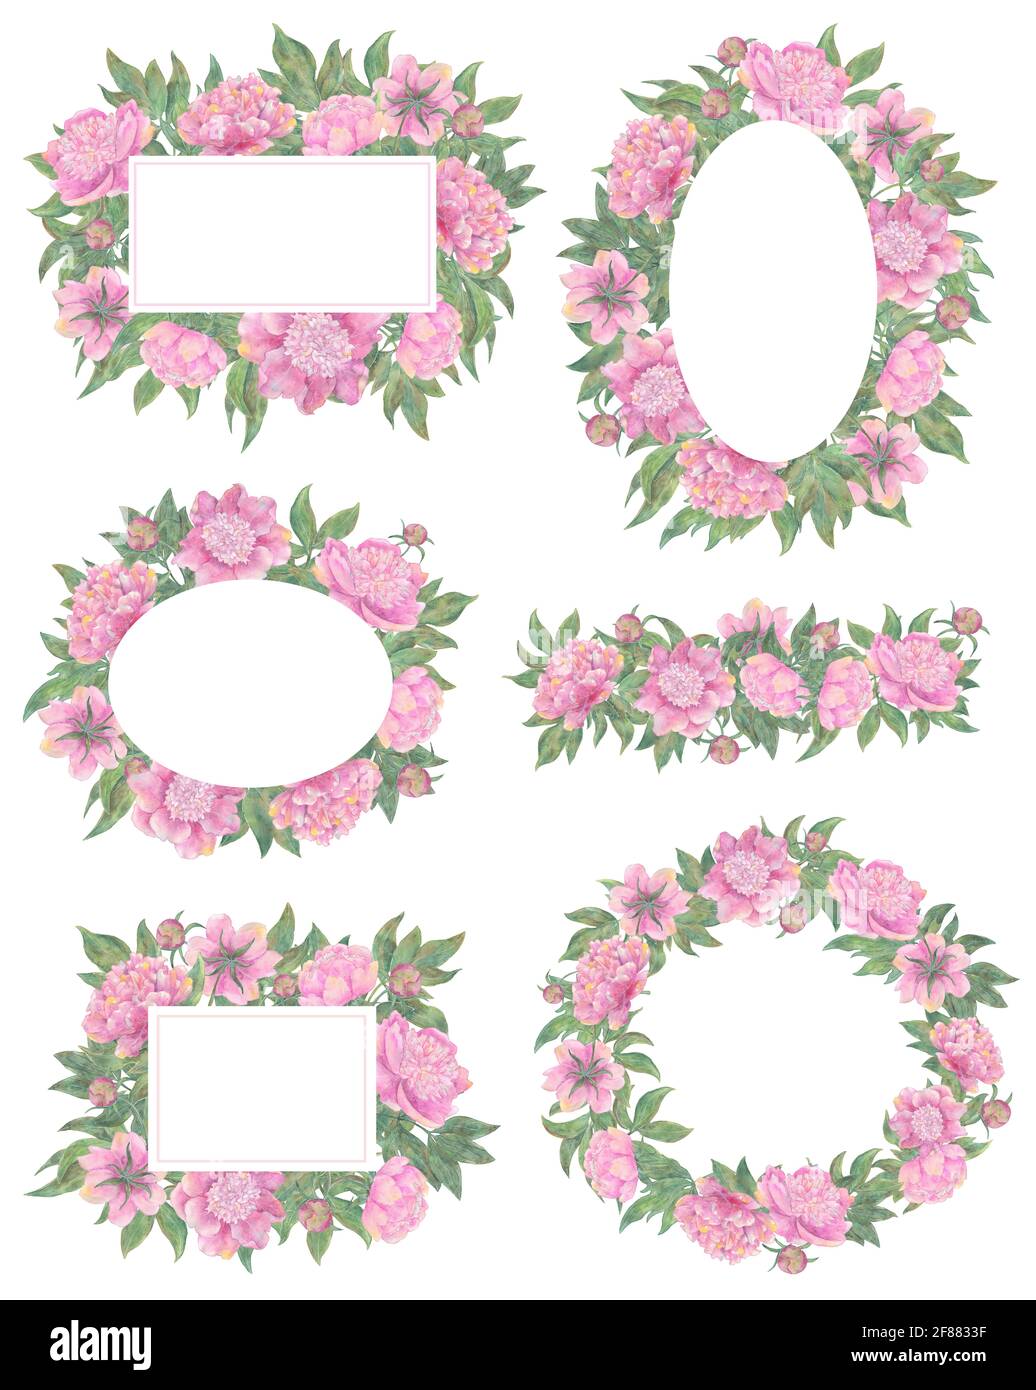 Design-Set mit floralen Bordüren und Rahmen von schönen Pfingstrosen Blumen isoliert auf weiß. Handgezeichnete Aquarellillustration, Saison Sommer und Frühling c Stockfoto